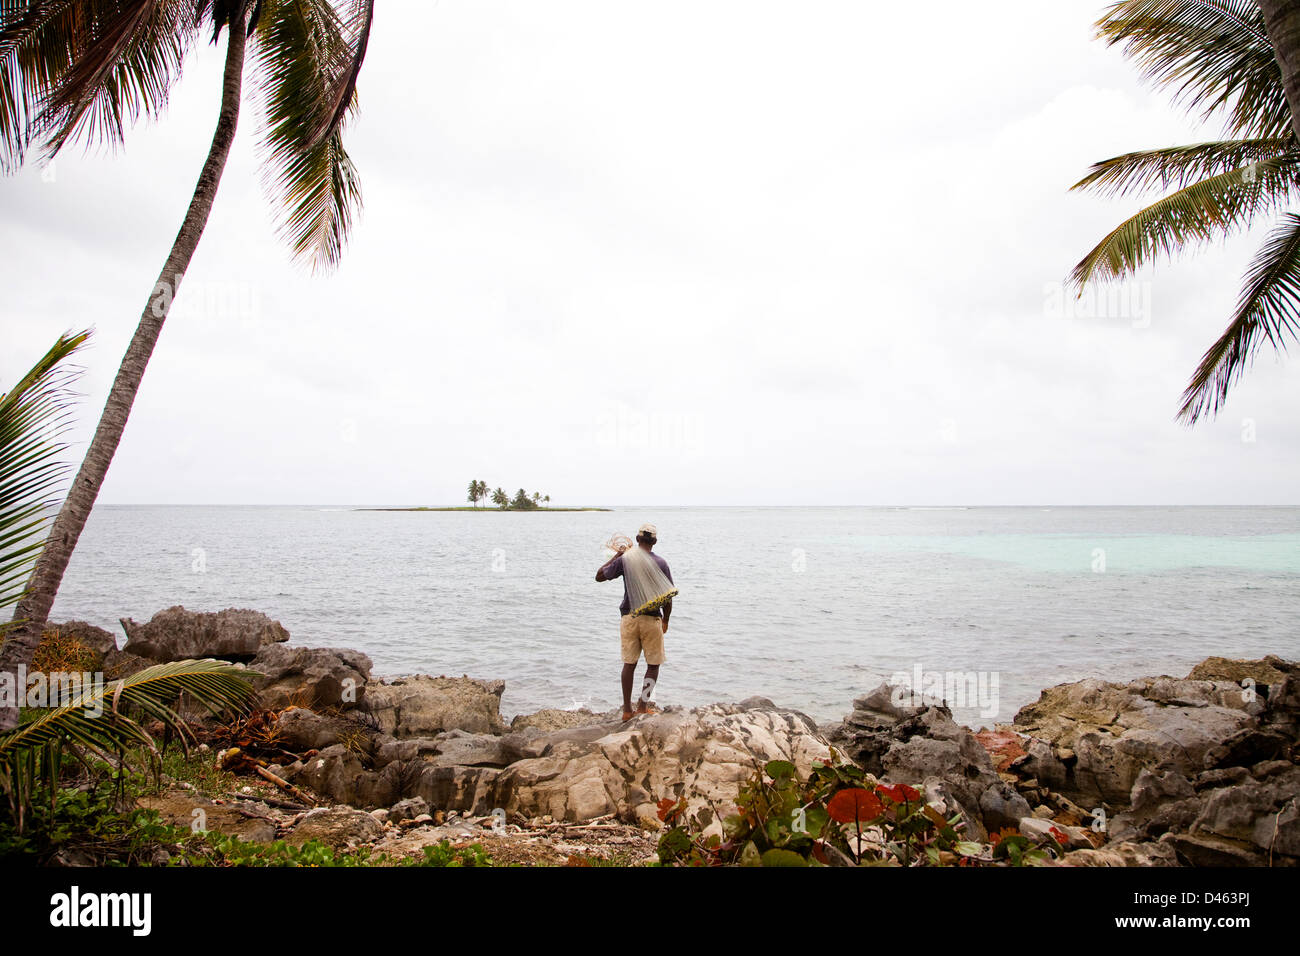 Un pêcheur tenant un filet se dresse en bordure de rochers surplombant l'océan sur un jour nuageux. Banque D'Images